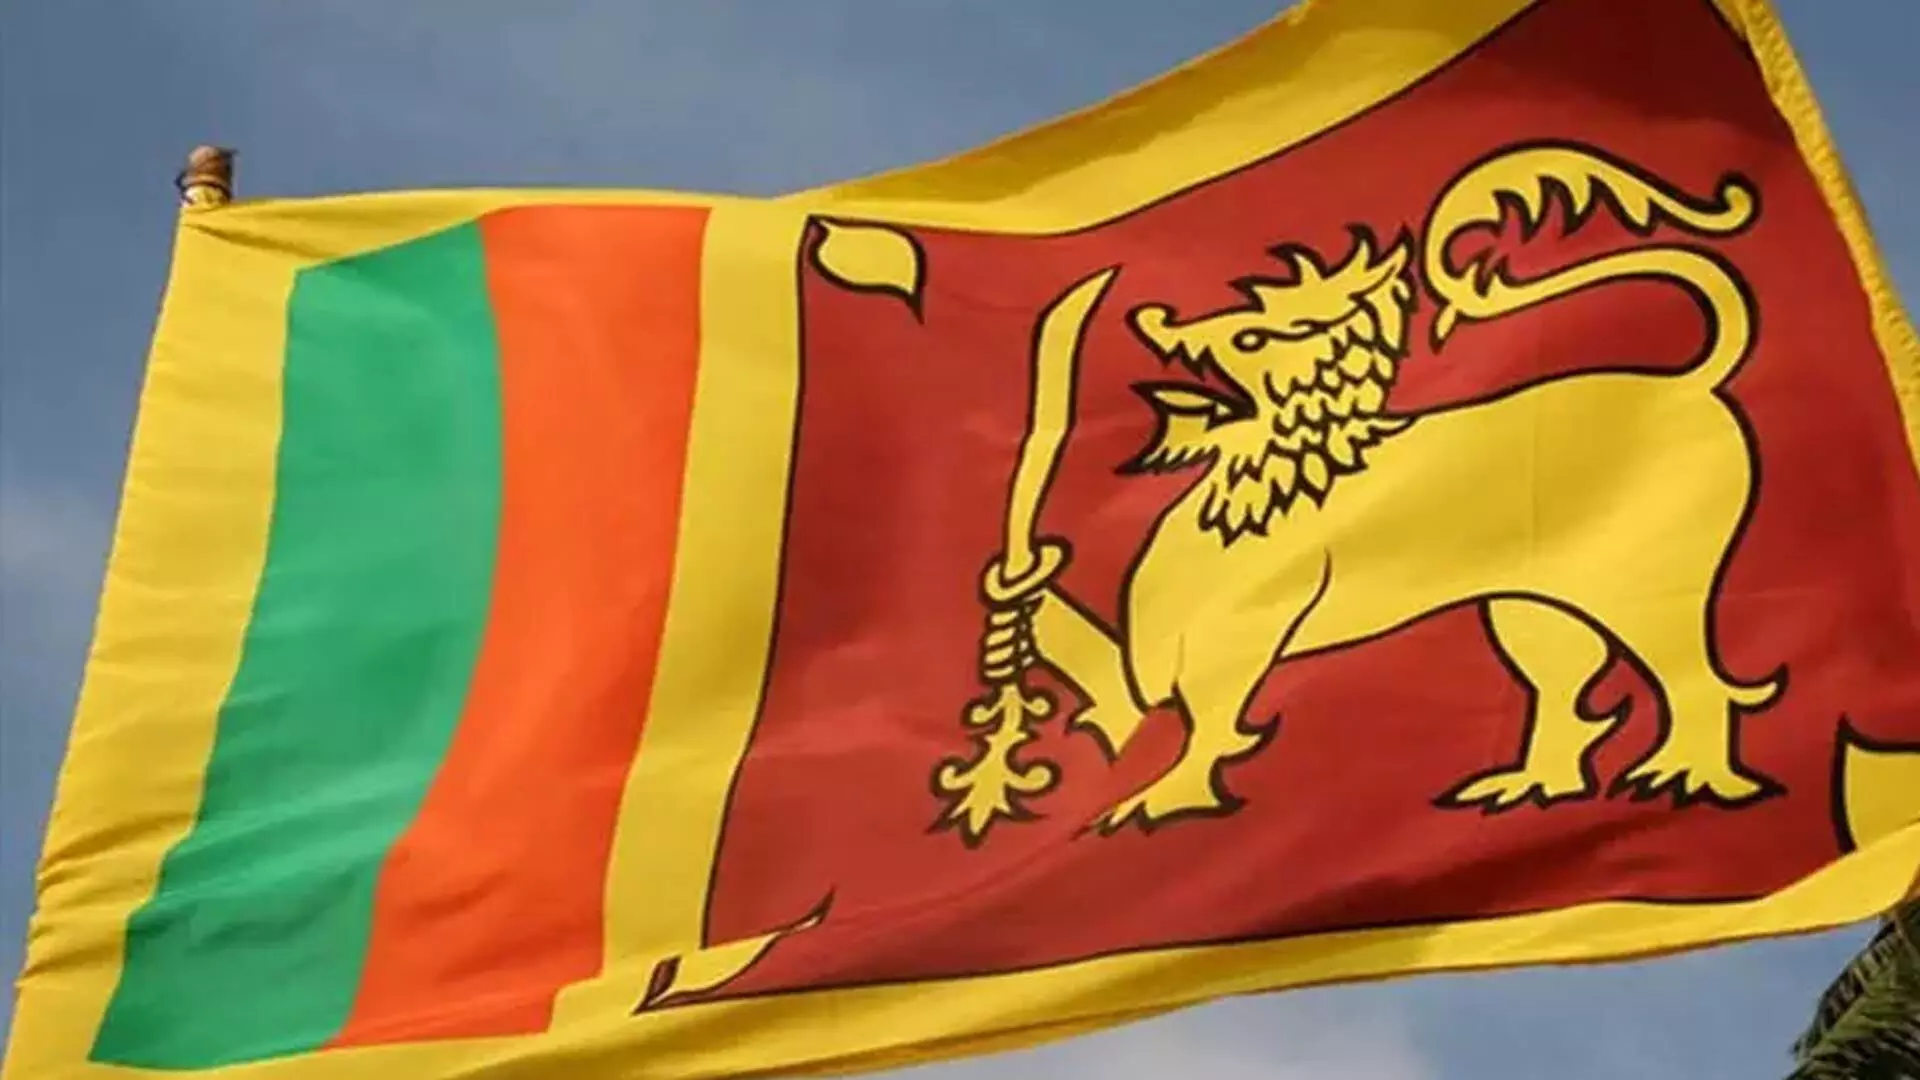 श्रीलंका में 17 सितंबर से 16 अक्टूबर के बीच राष्ट्रपति चुनाव होंगे